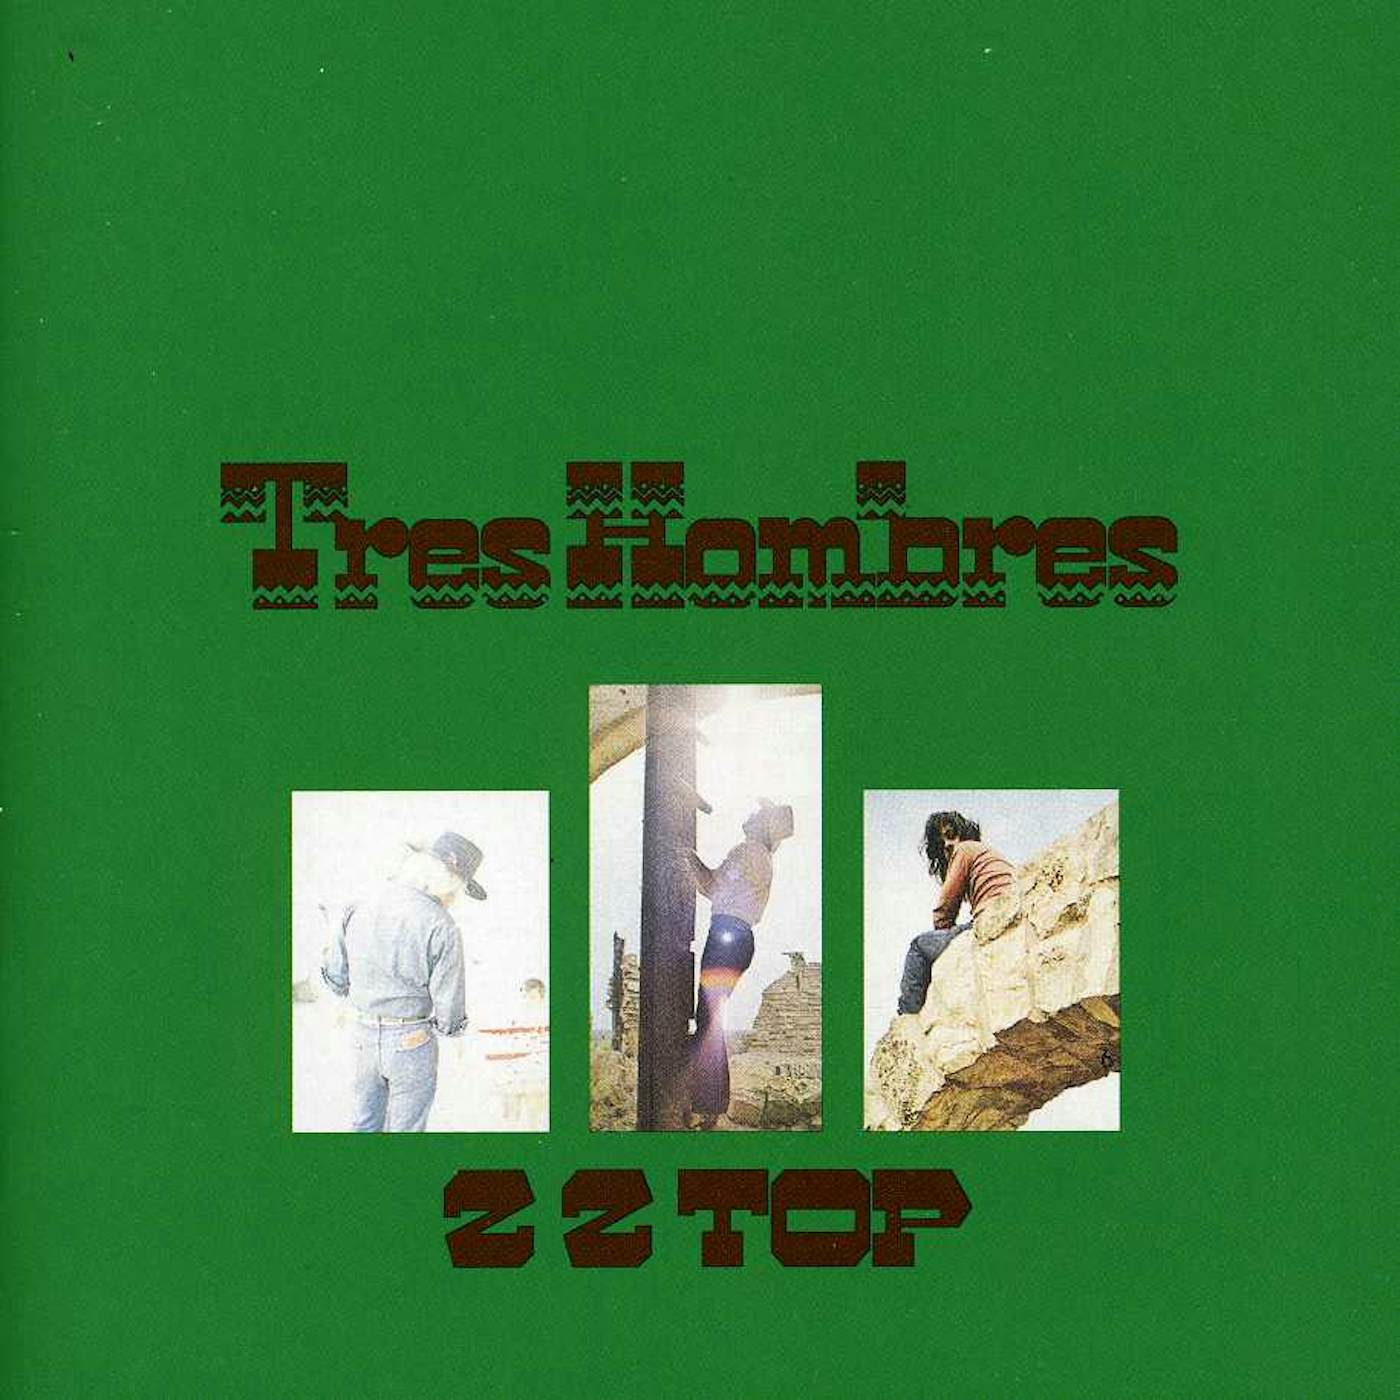 ZZ Top TRES HOMBRES CD